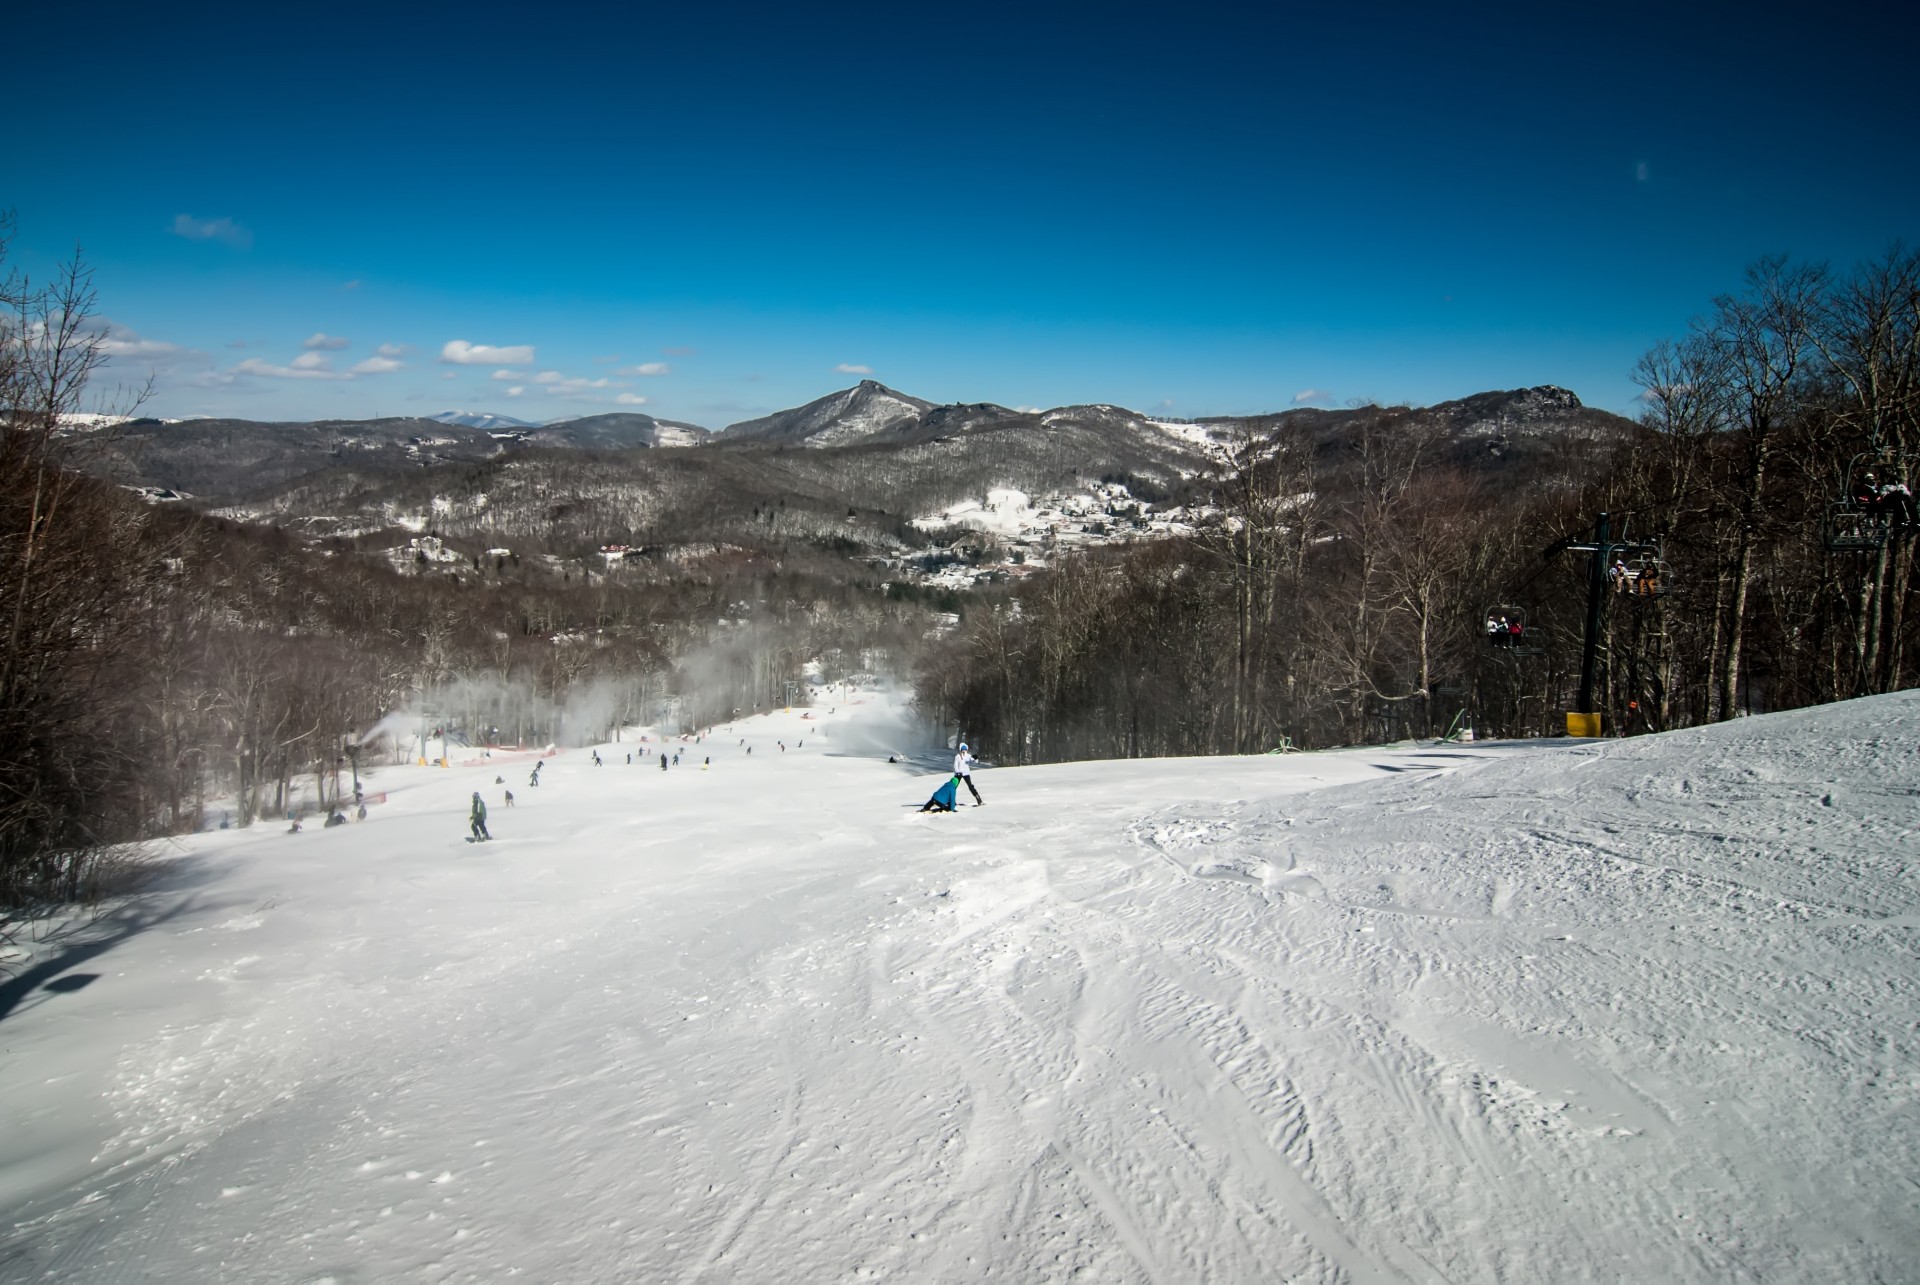 At Ski Resort In Winter